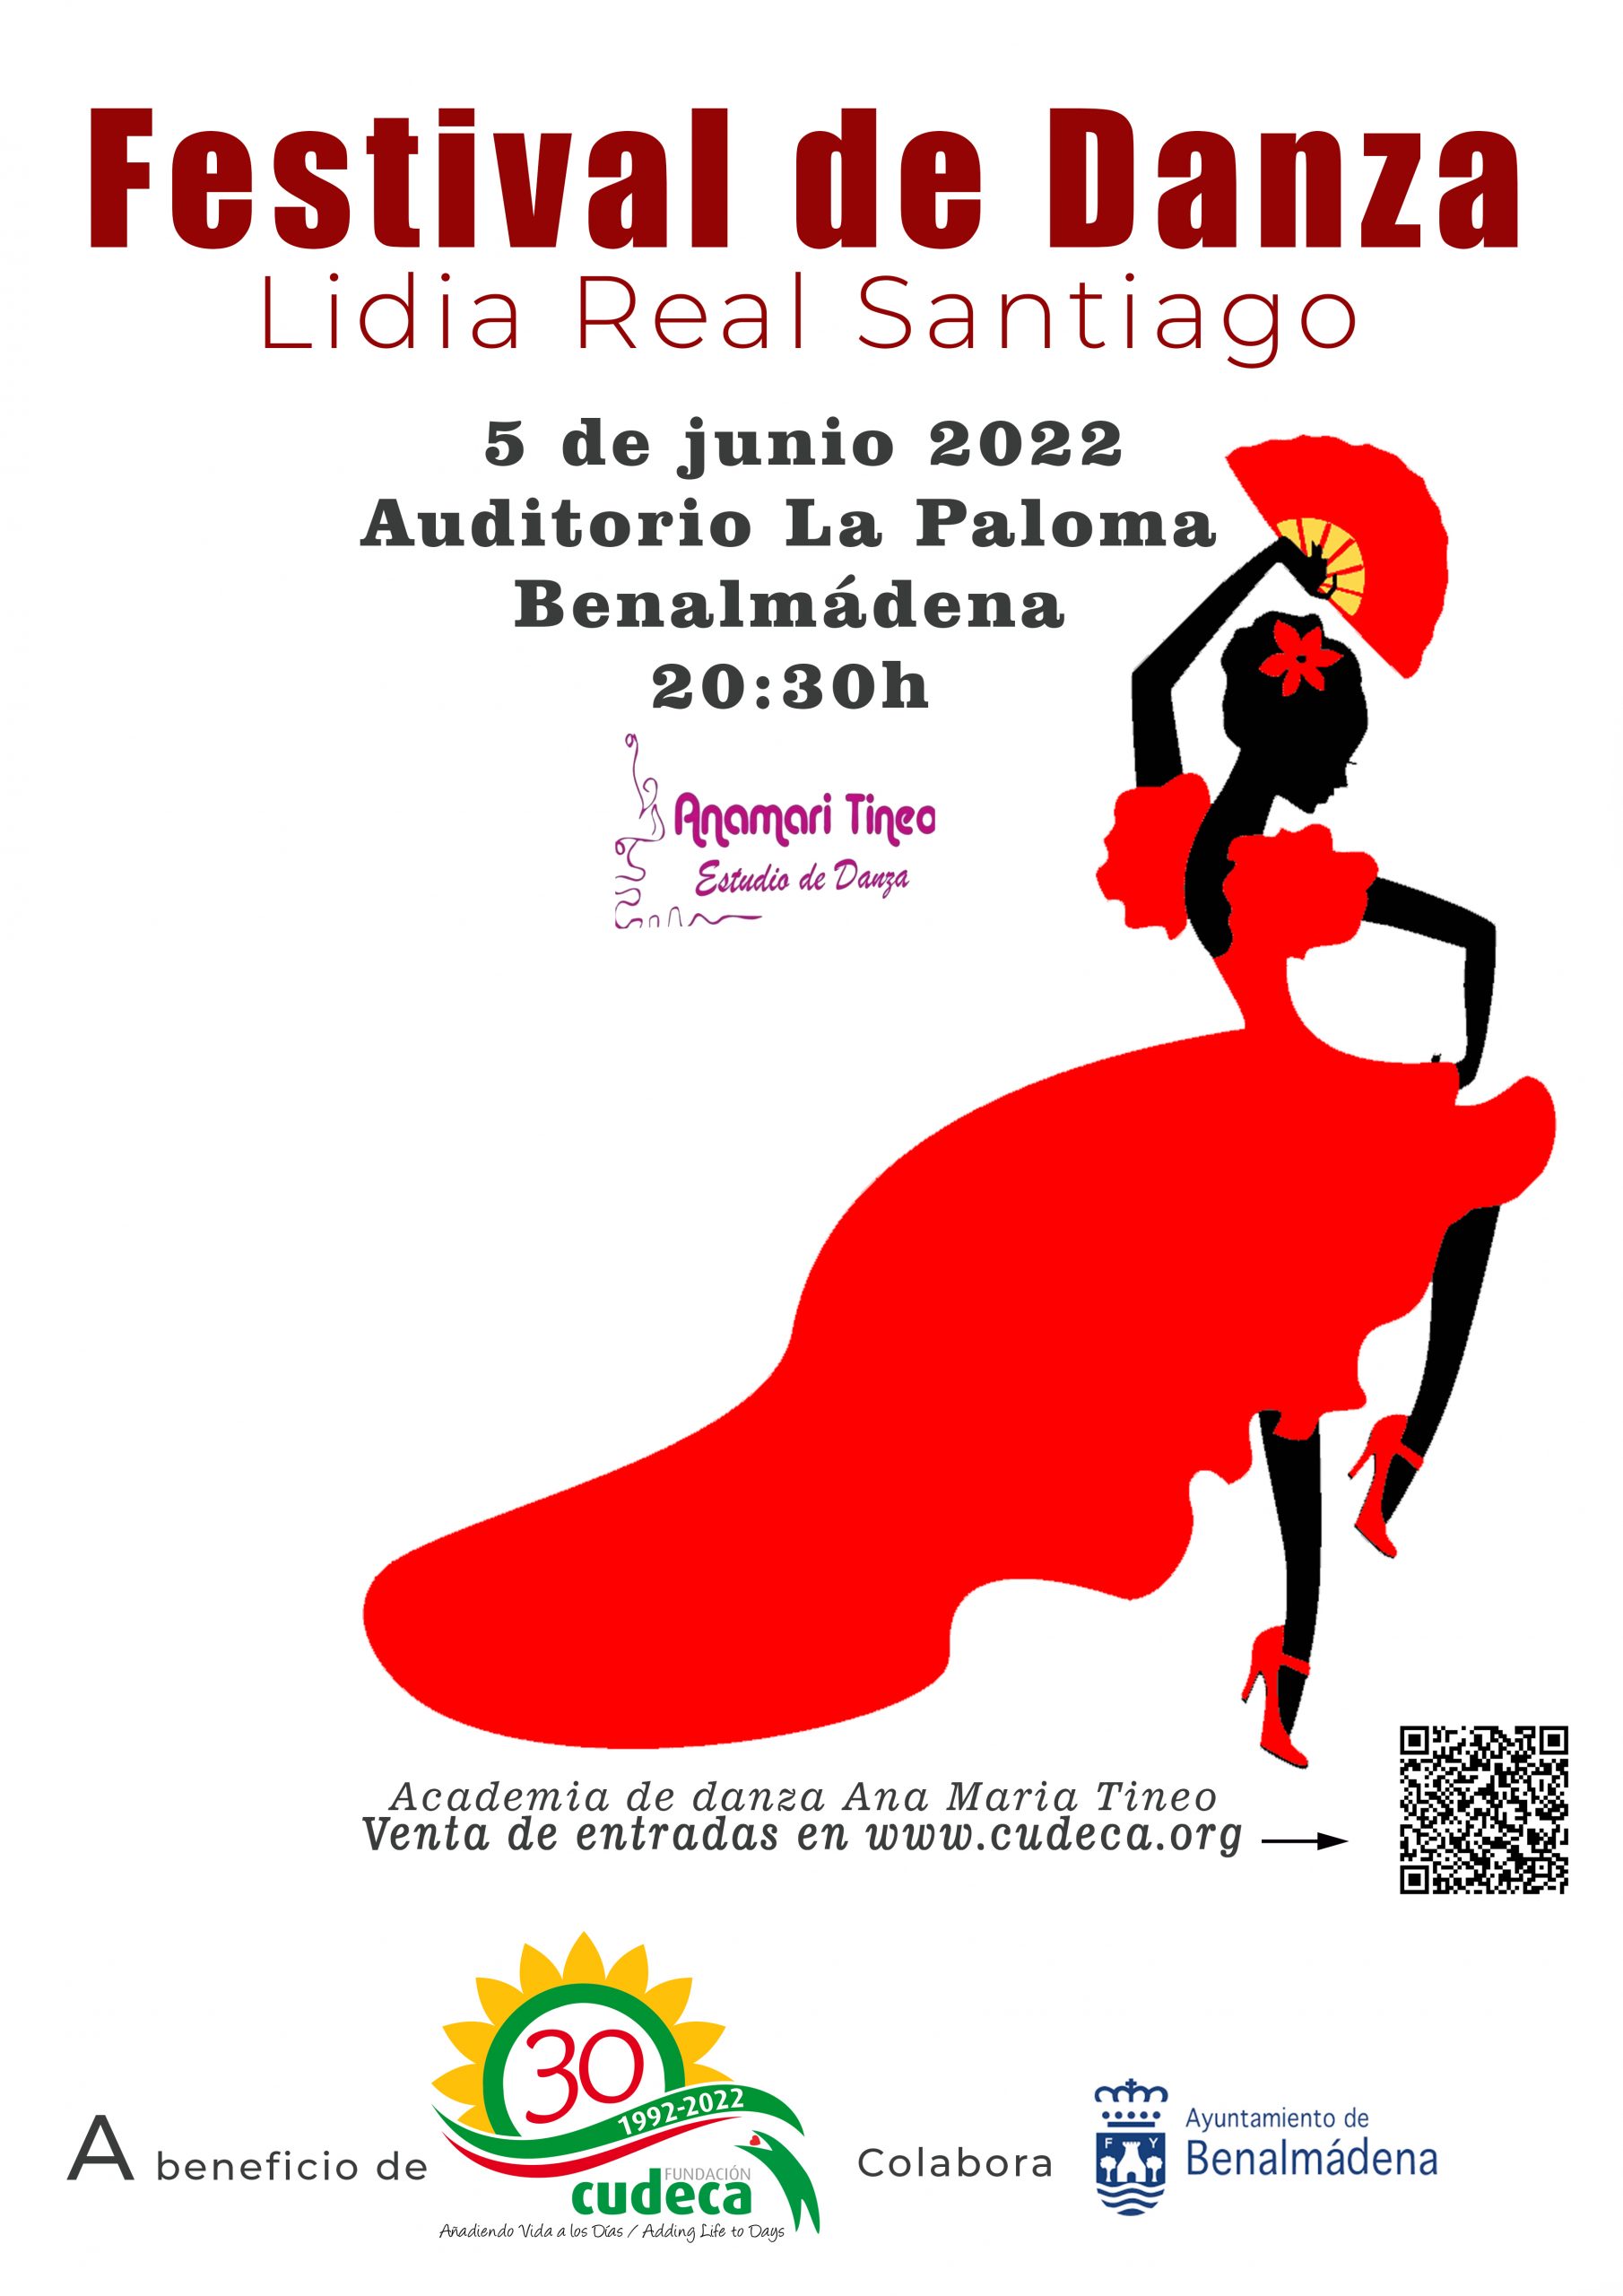 Lidia Real Santiago Dance Festival in aid of Cudeca